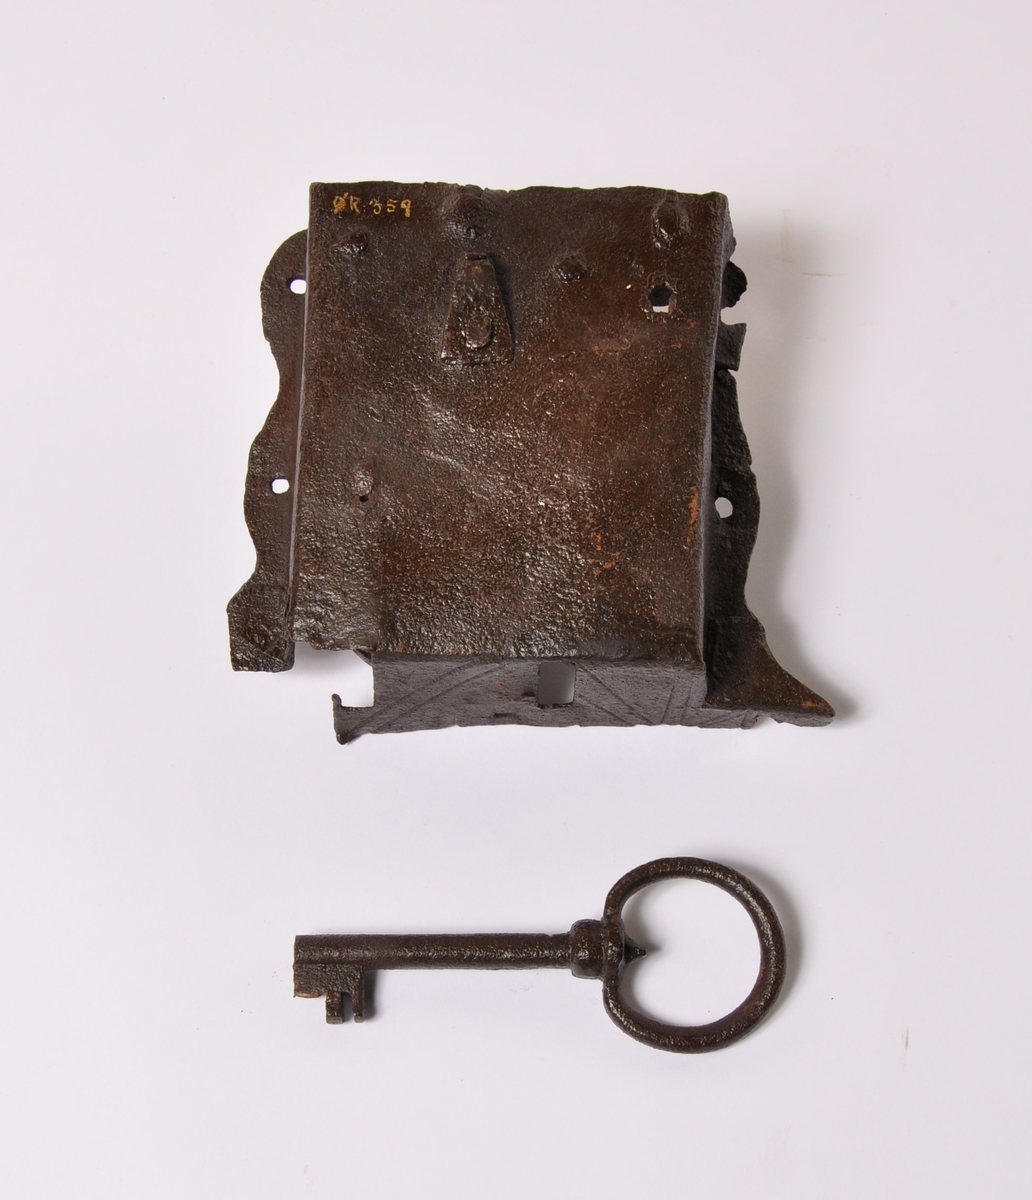 Håndsmidd lås til kiste med nøkkel av metall